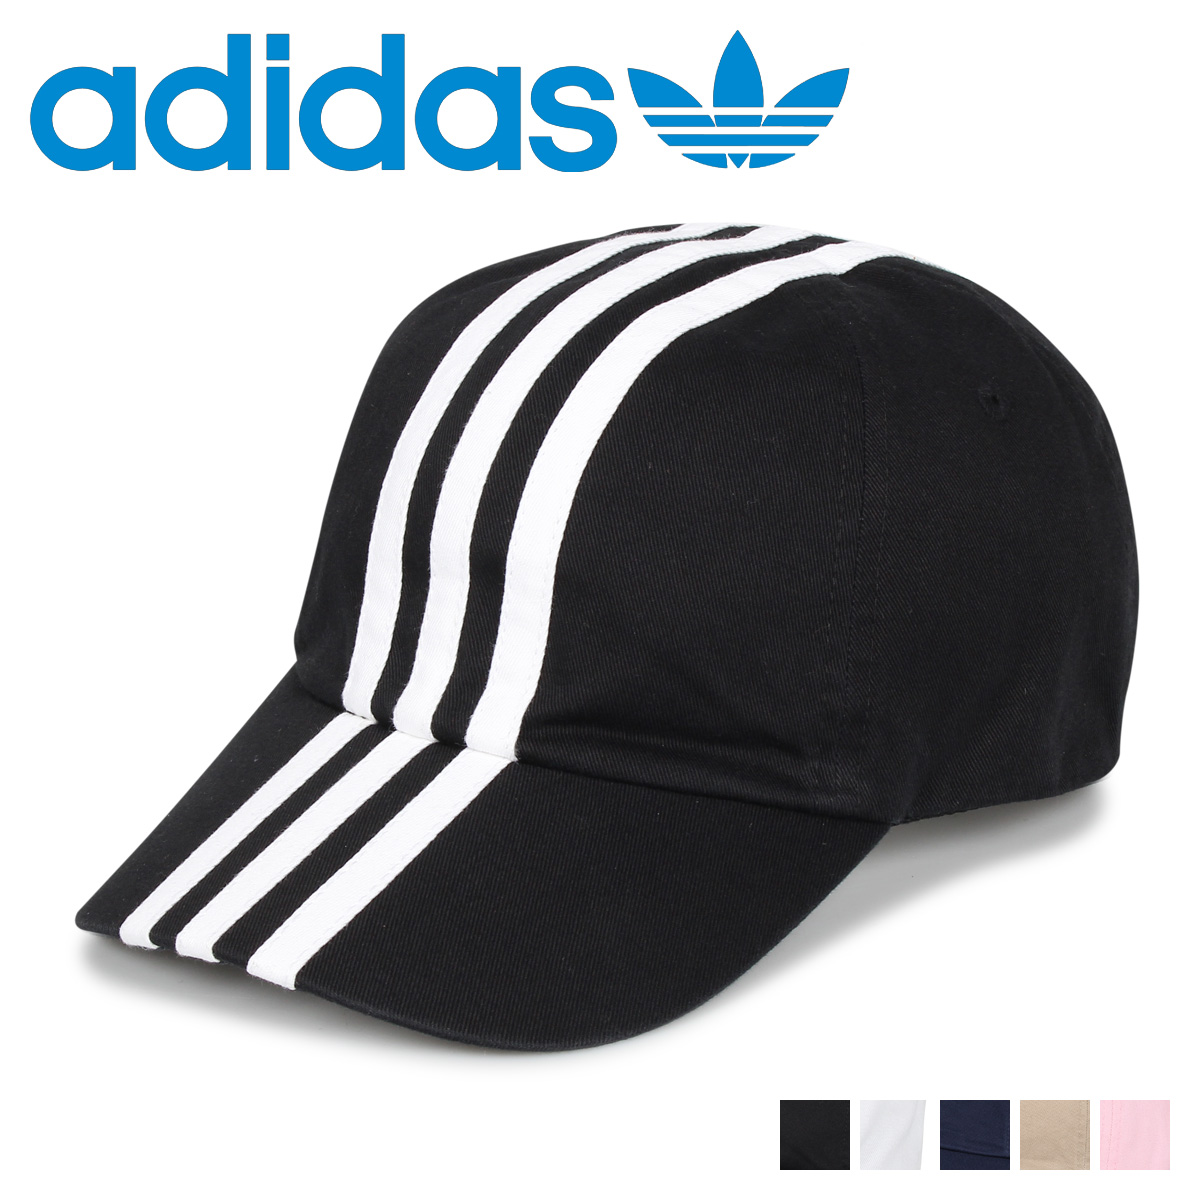 楽天市場 最大600円offクーポン Adidas Ads Cm 3st Cap アディダス キャップ 帽子 ベースボールキャップ メンズ レディース ブラック ホワイト ネイビー ベージュ ピンク 黒 白 187 Goods Lab